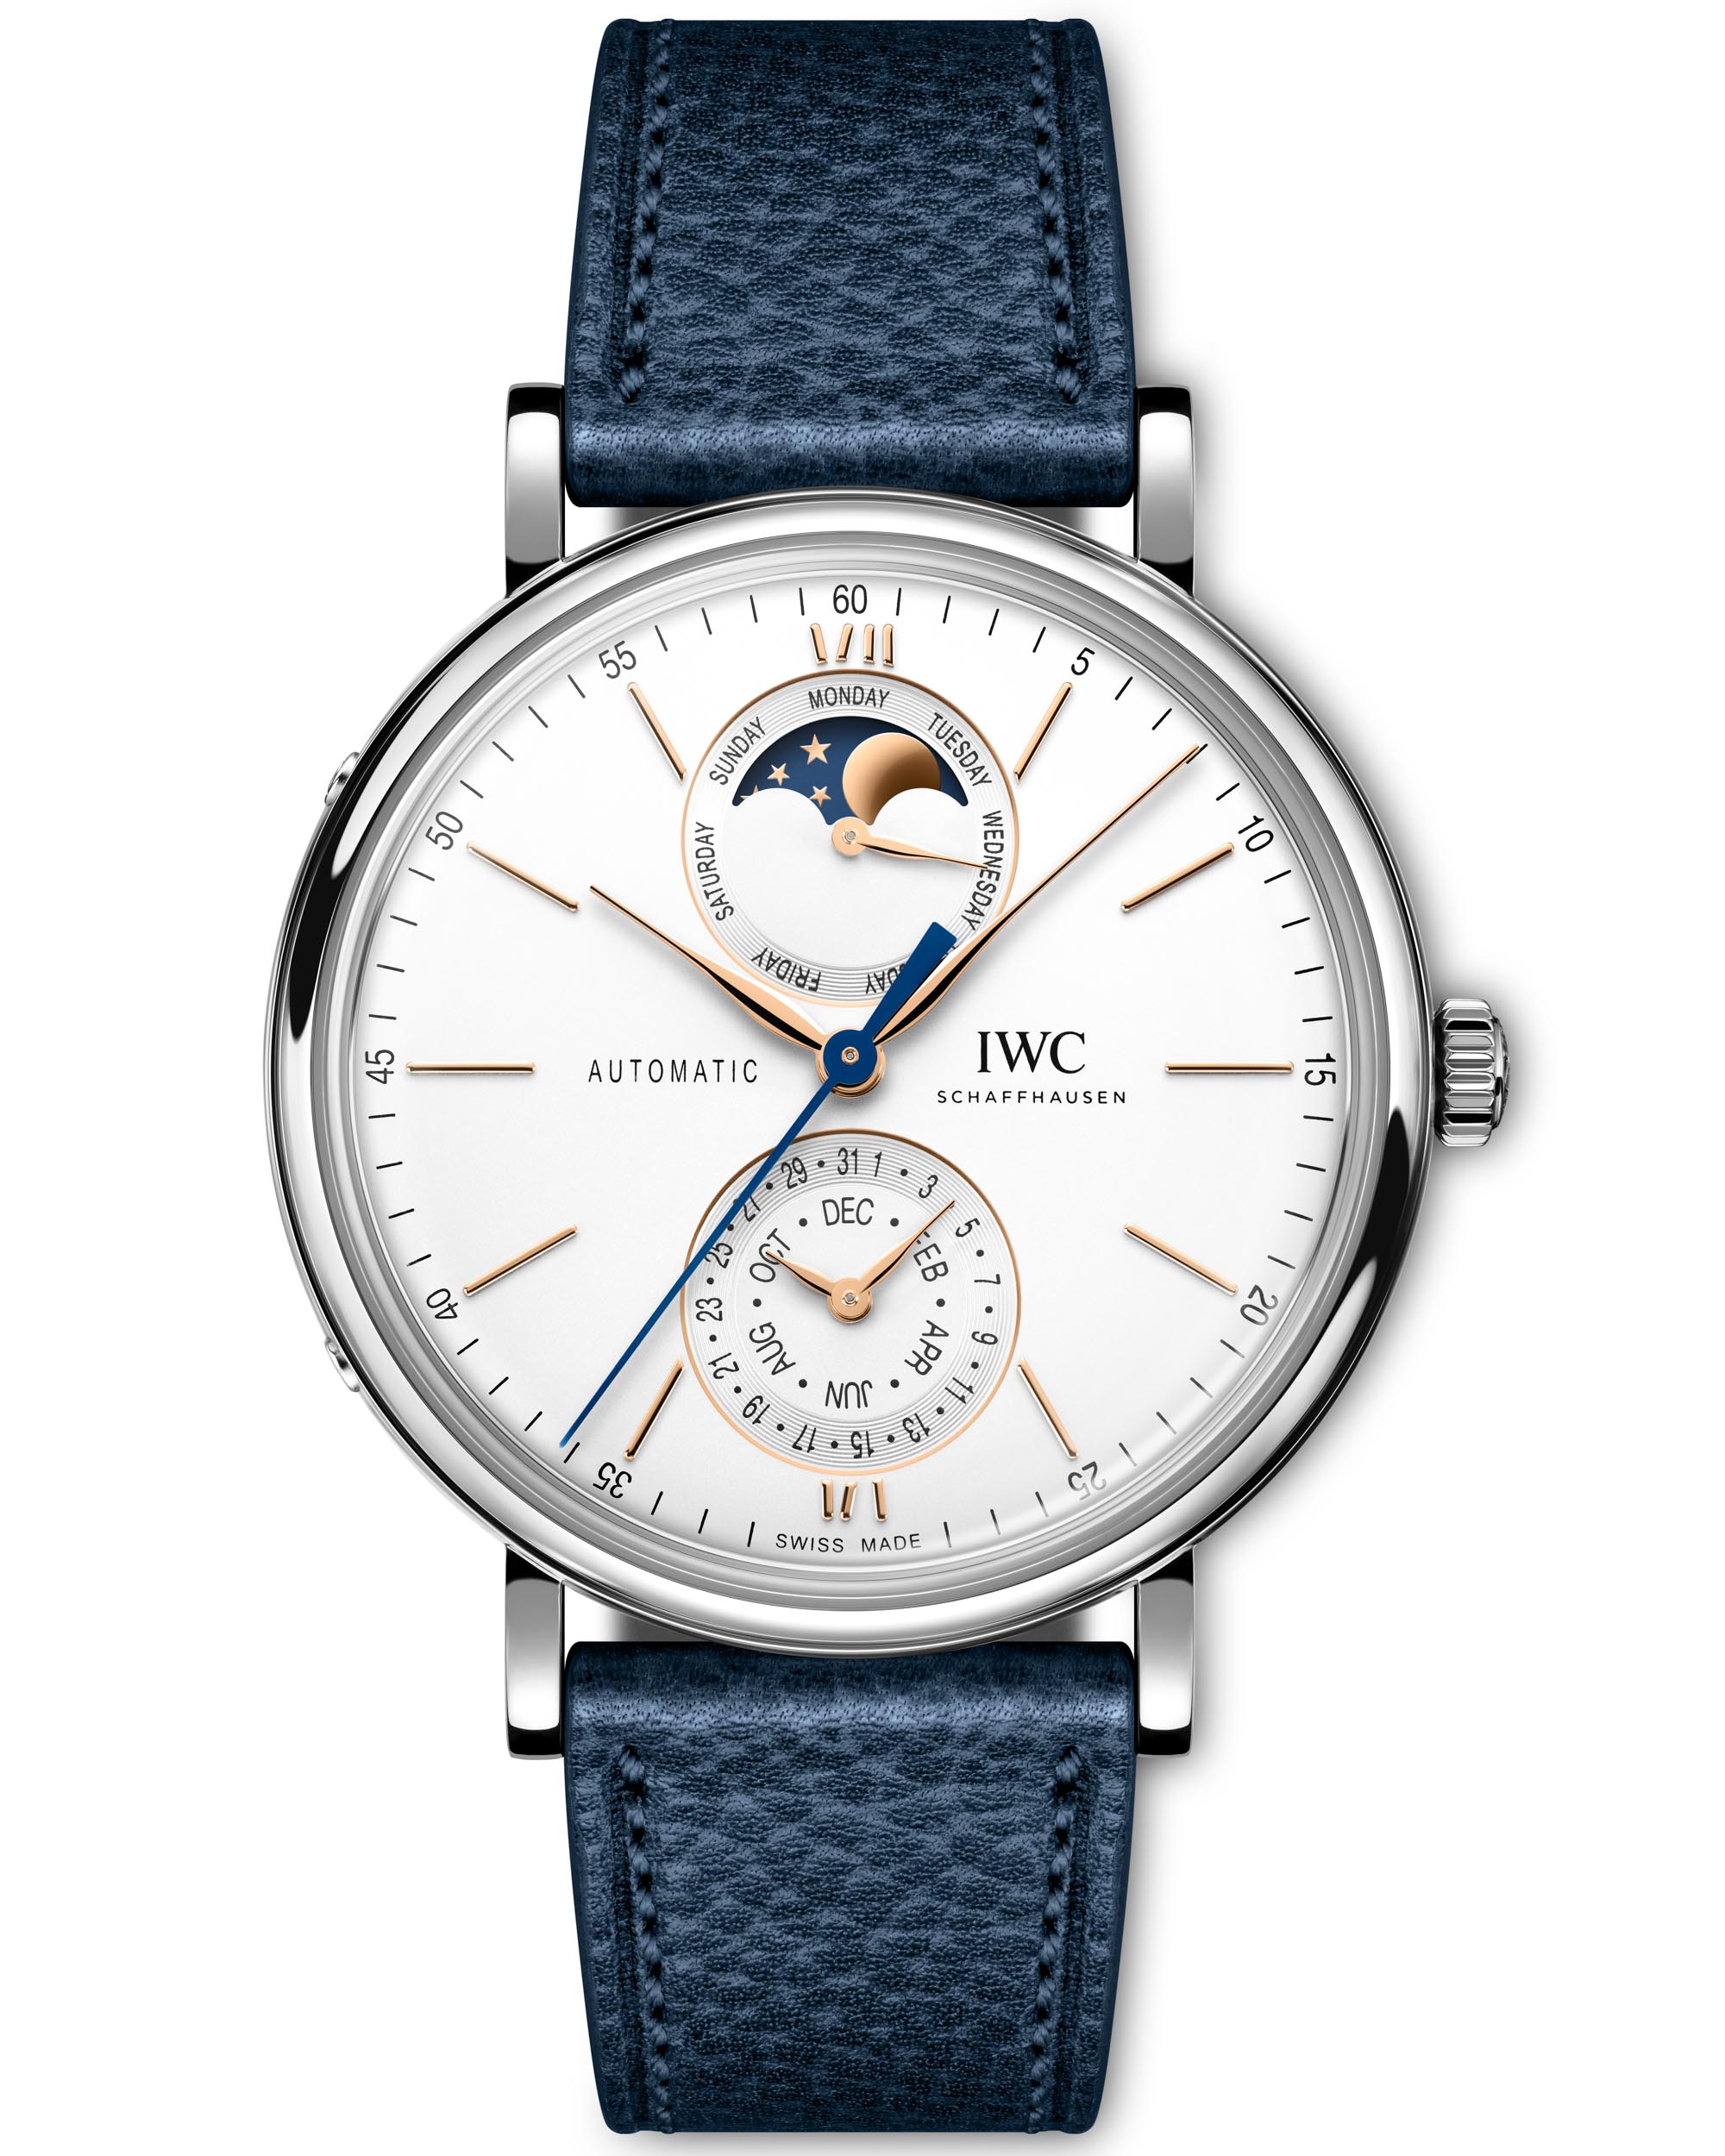 IWC представляет часы с полным календарем Portofino